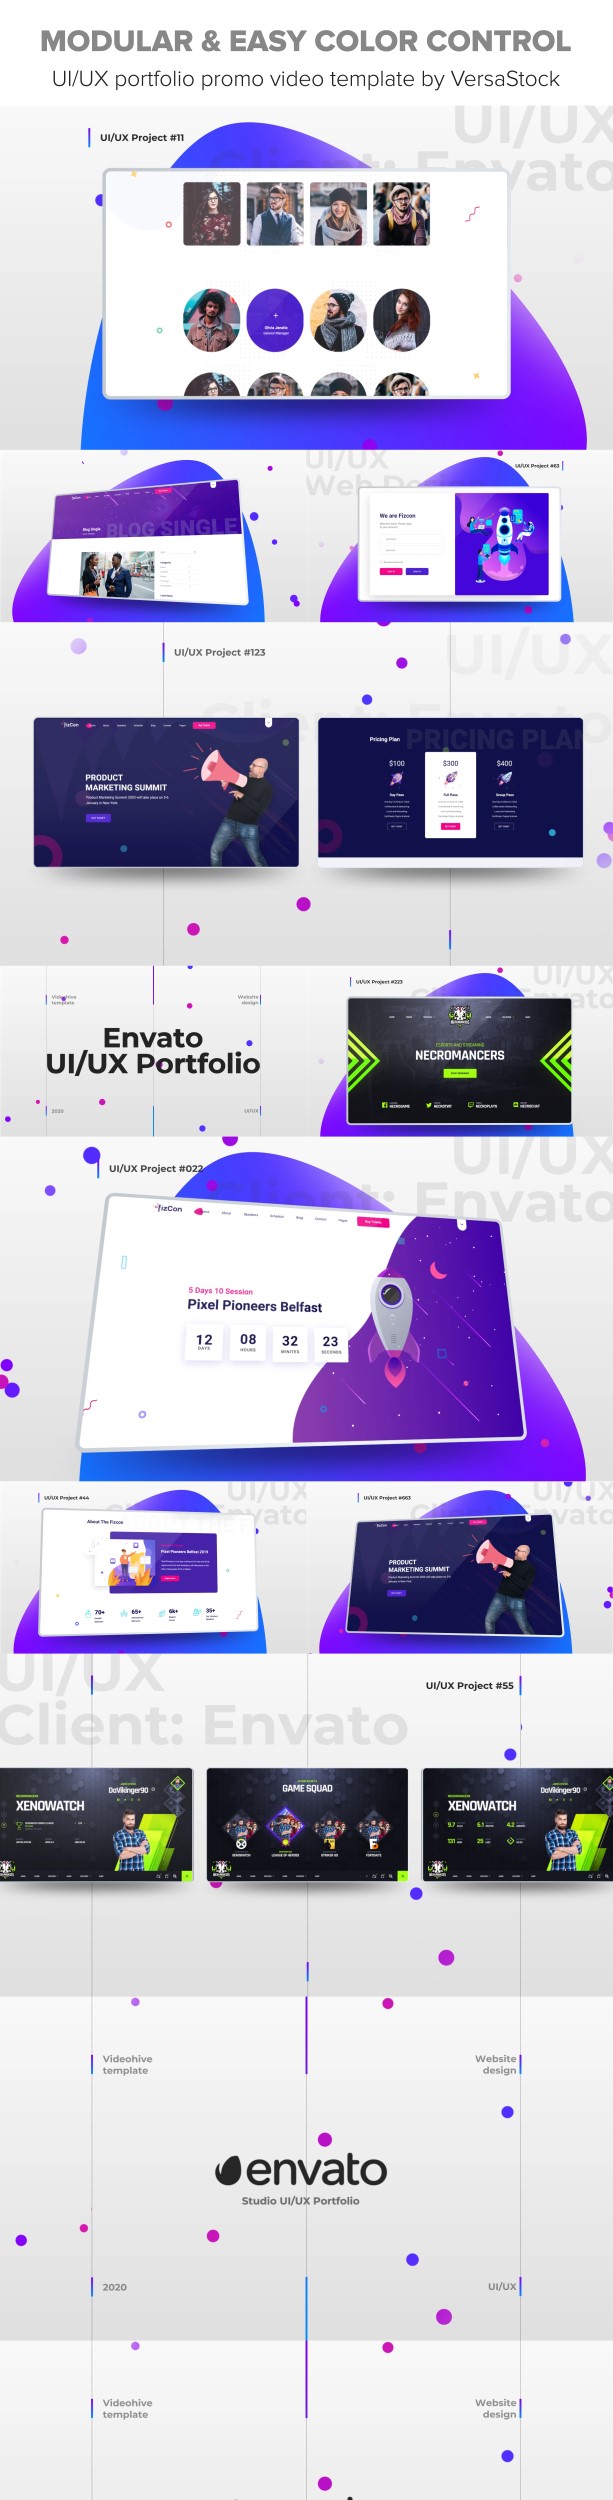 UI/UX Portfolio Promo 23752915